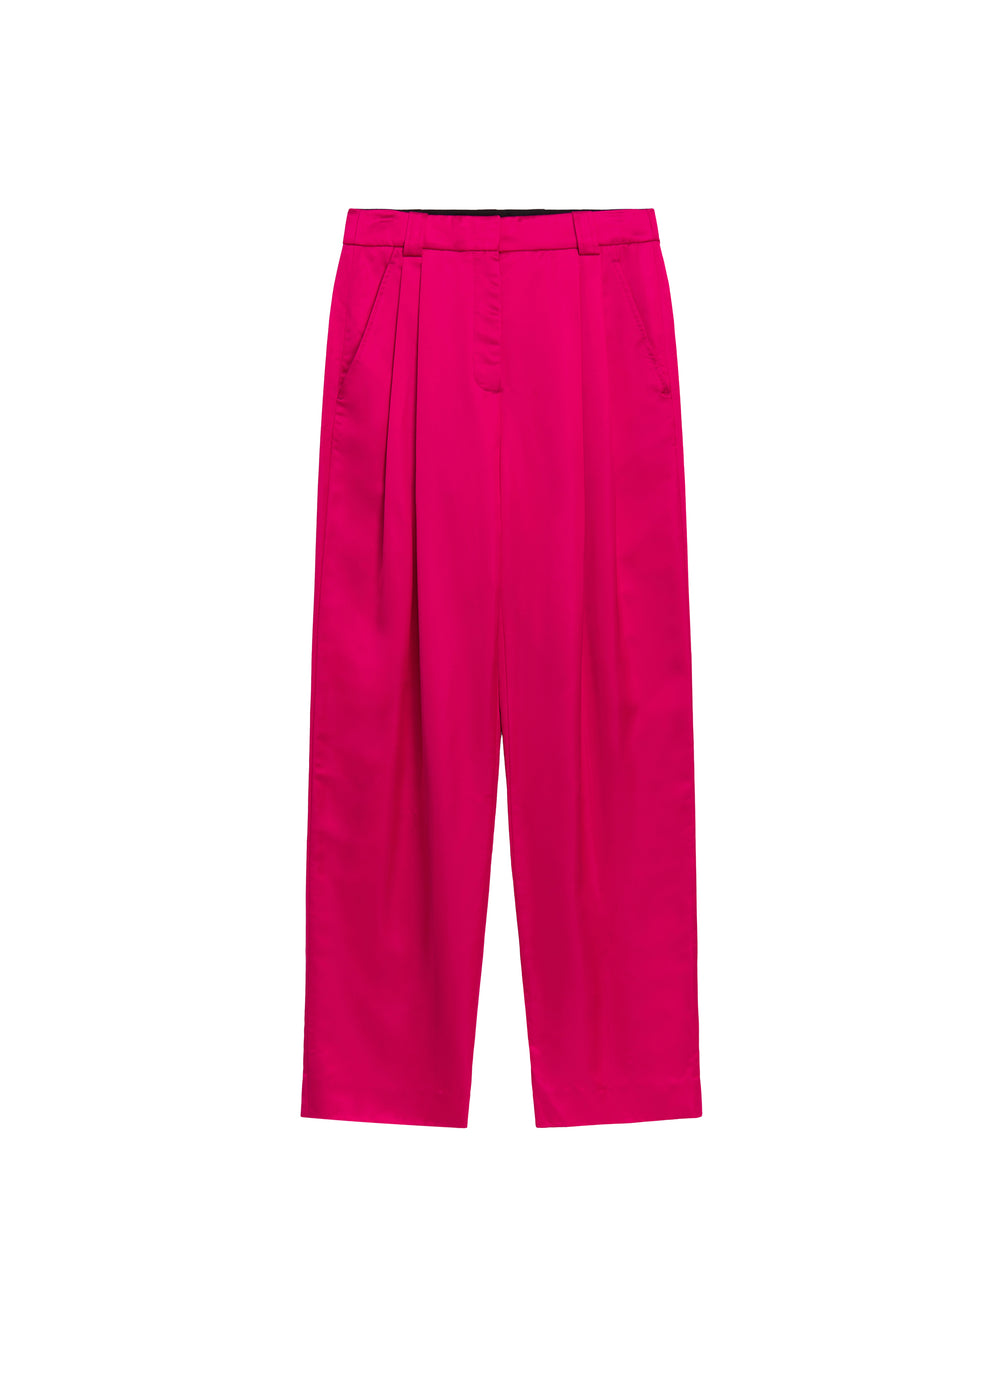 flatlay of bright pink satin pant